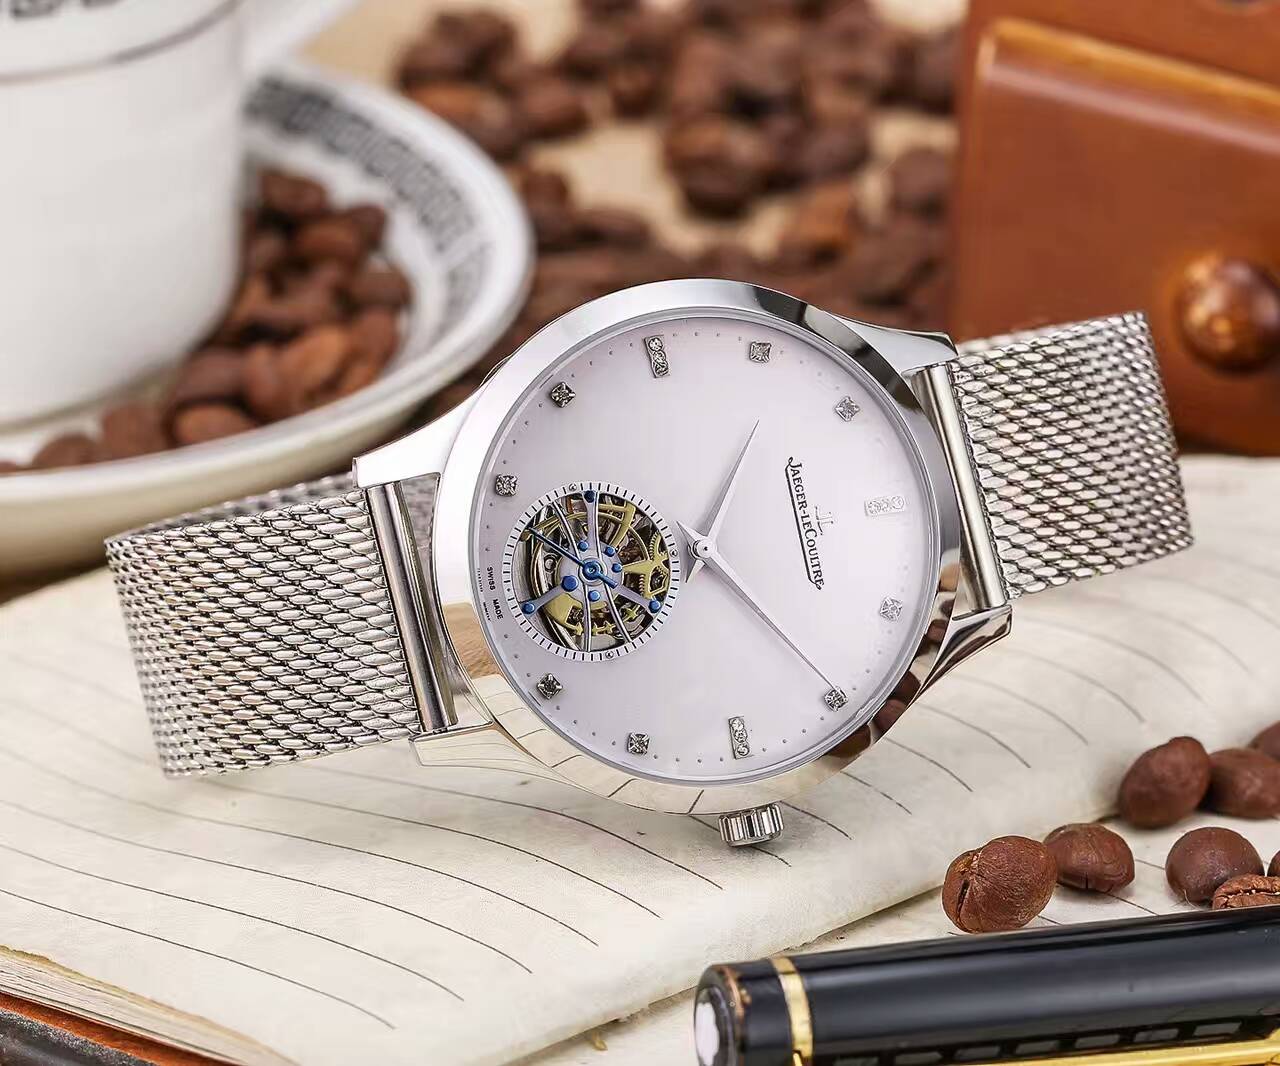 積家 礦物質超強鏡面 精鋼錶帶 精致品質 316精鋼 大方風范 精品男士腕錶-rhid-116841